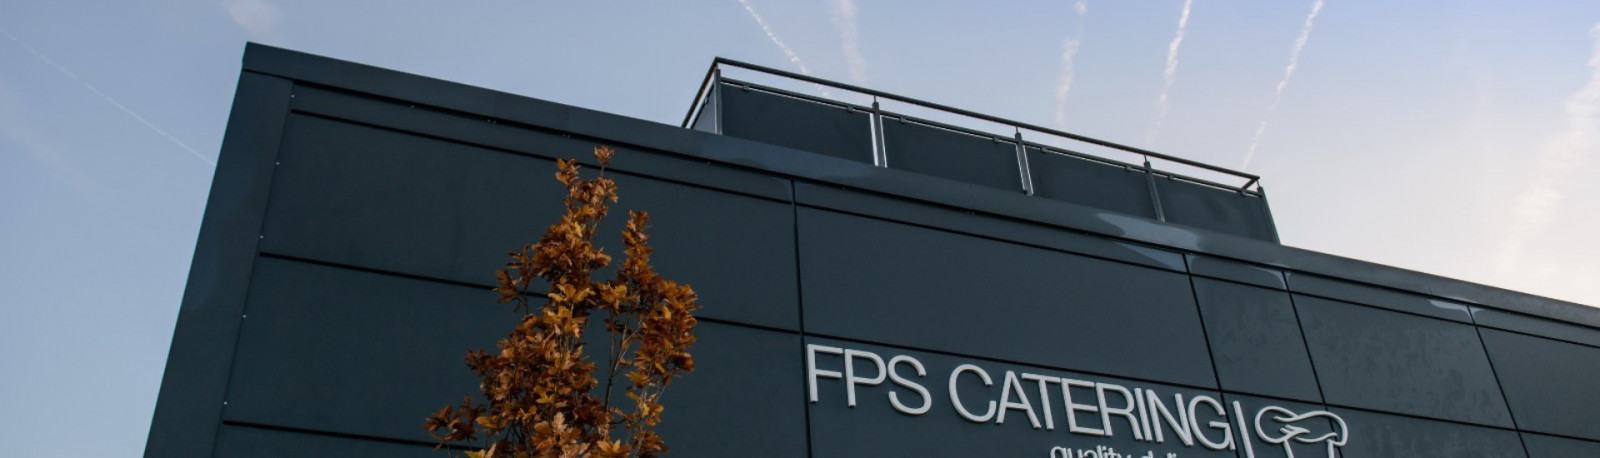 FPS Catering Anfrage kontakt Header